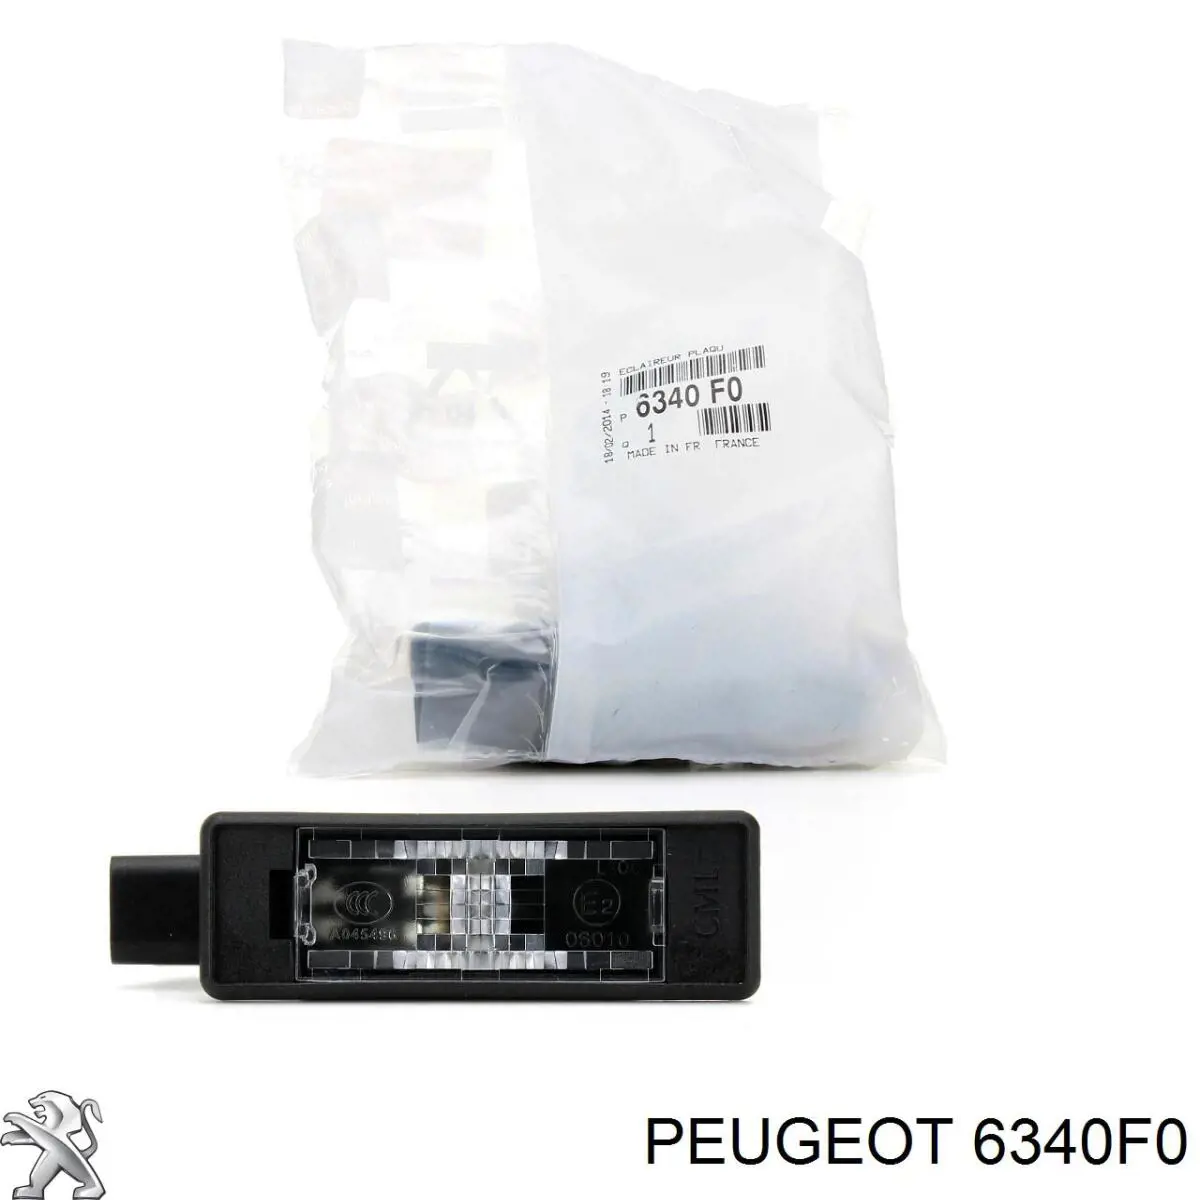 6340F0 Peugeot/Citroen lanterna da luz de fundo de matrícula traseira